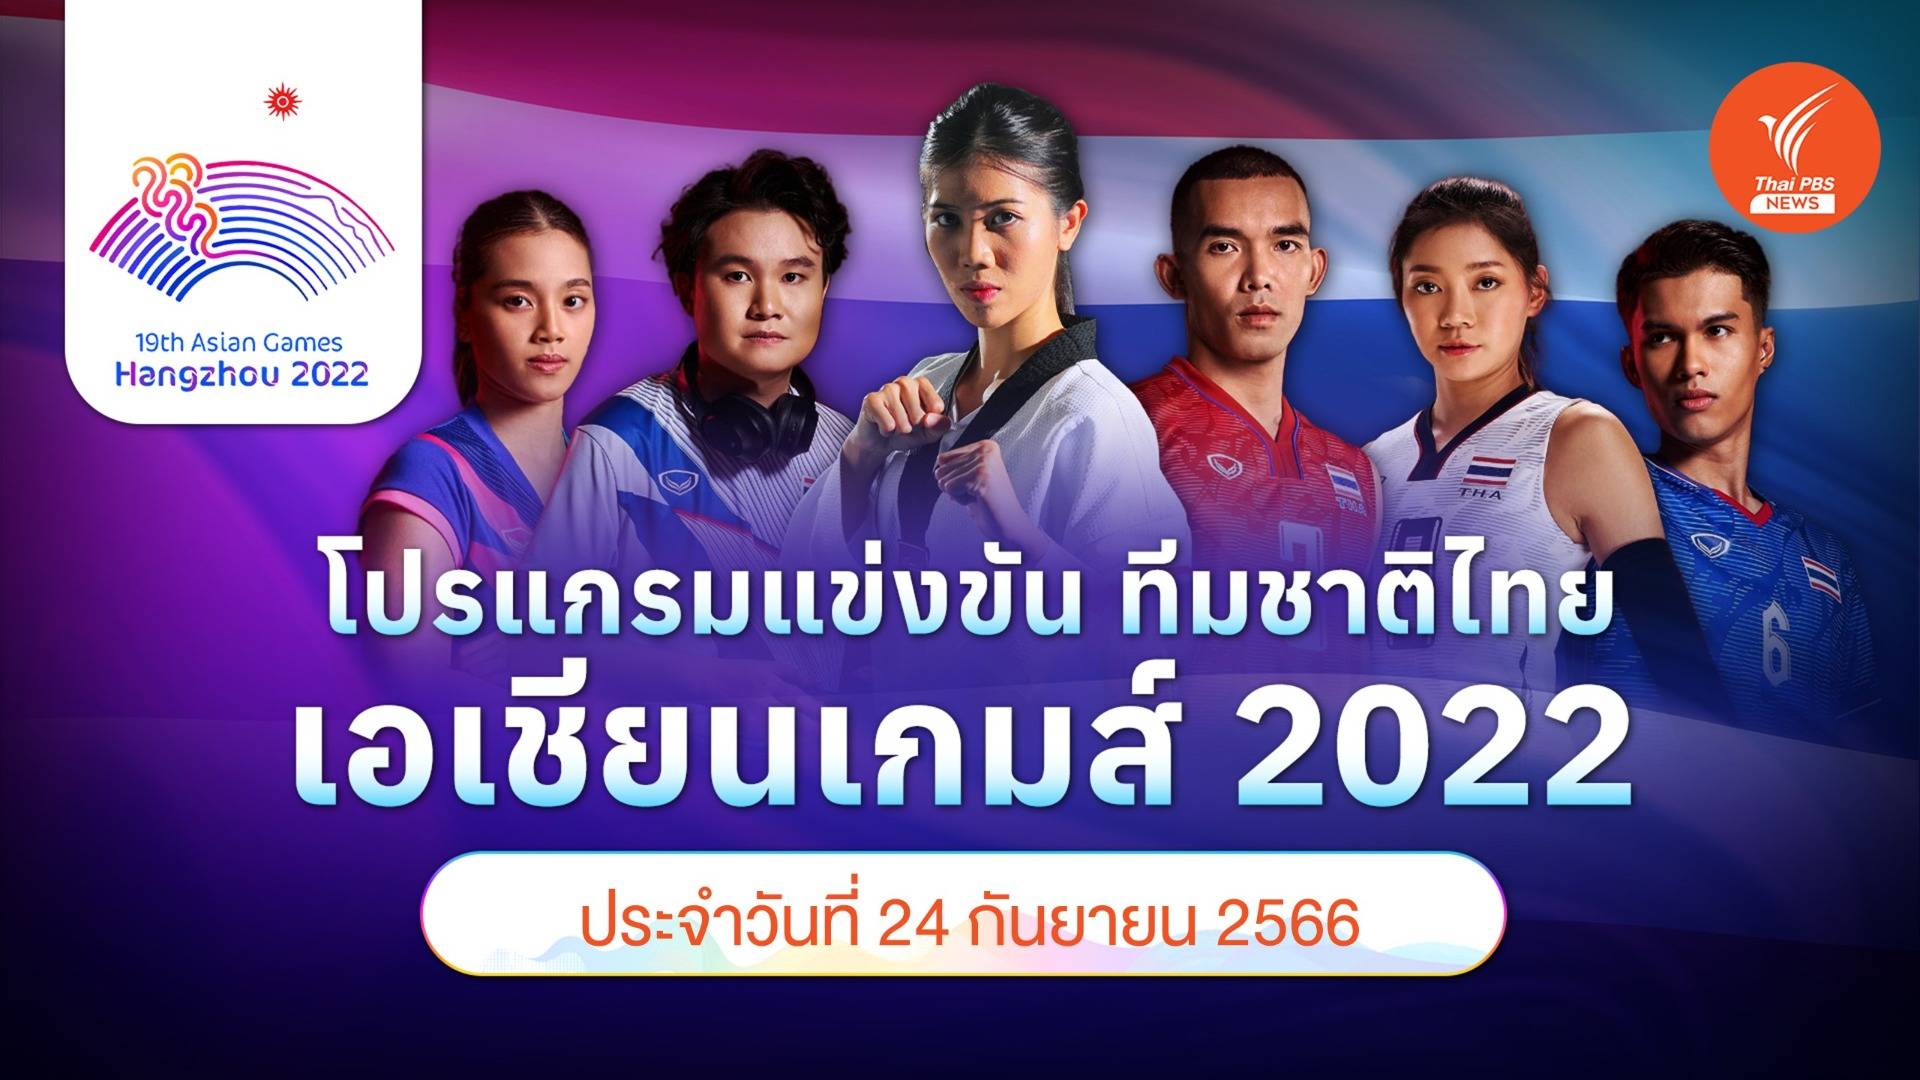 โปรแกรมการแข่งขัน เอเชียนเกมส์ 2022 ทัพนักกีฬาไทย วันที่ 24 ก.ย.66